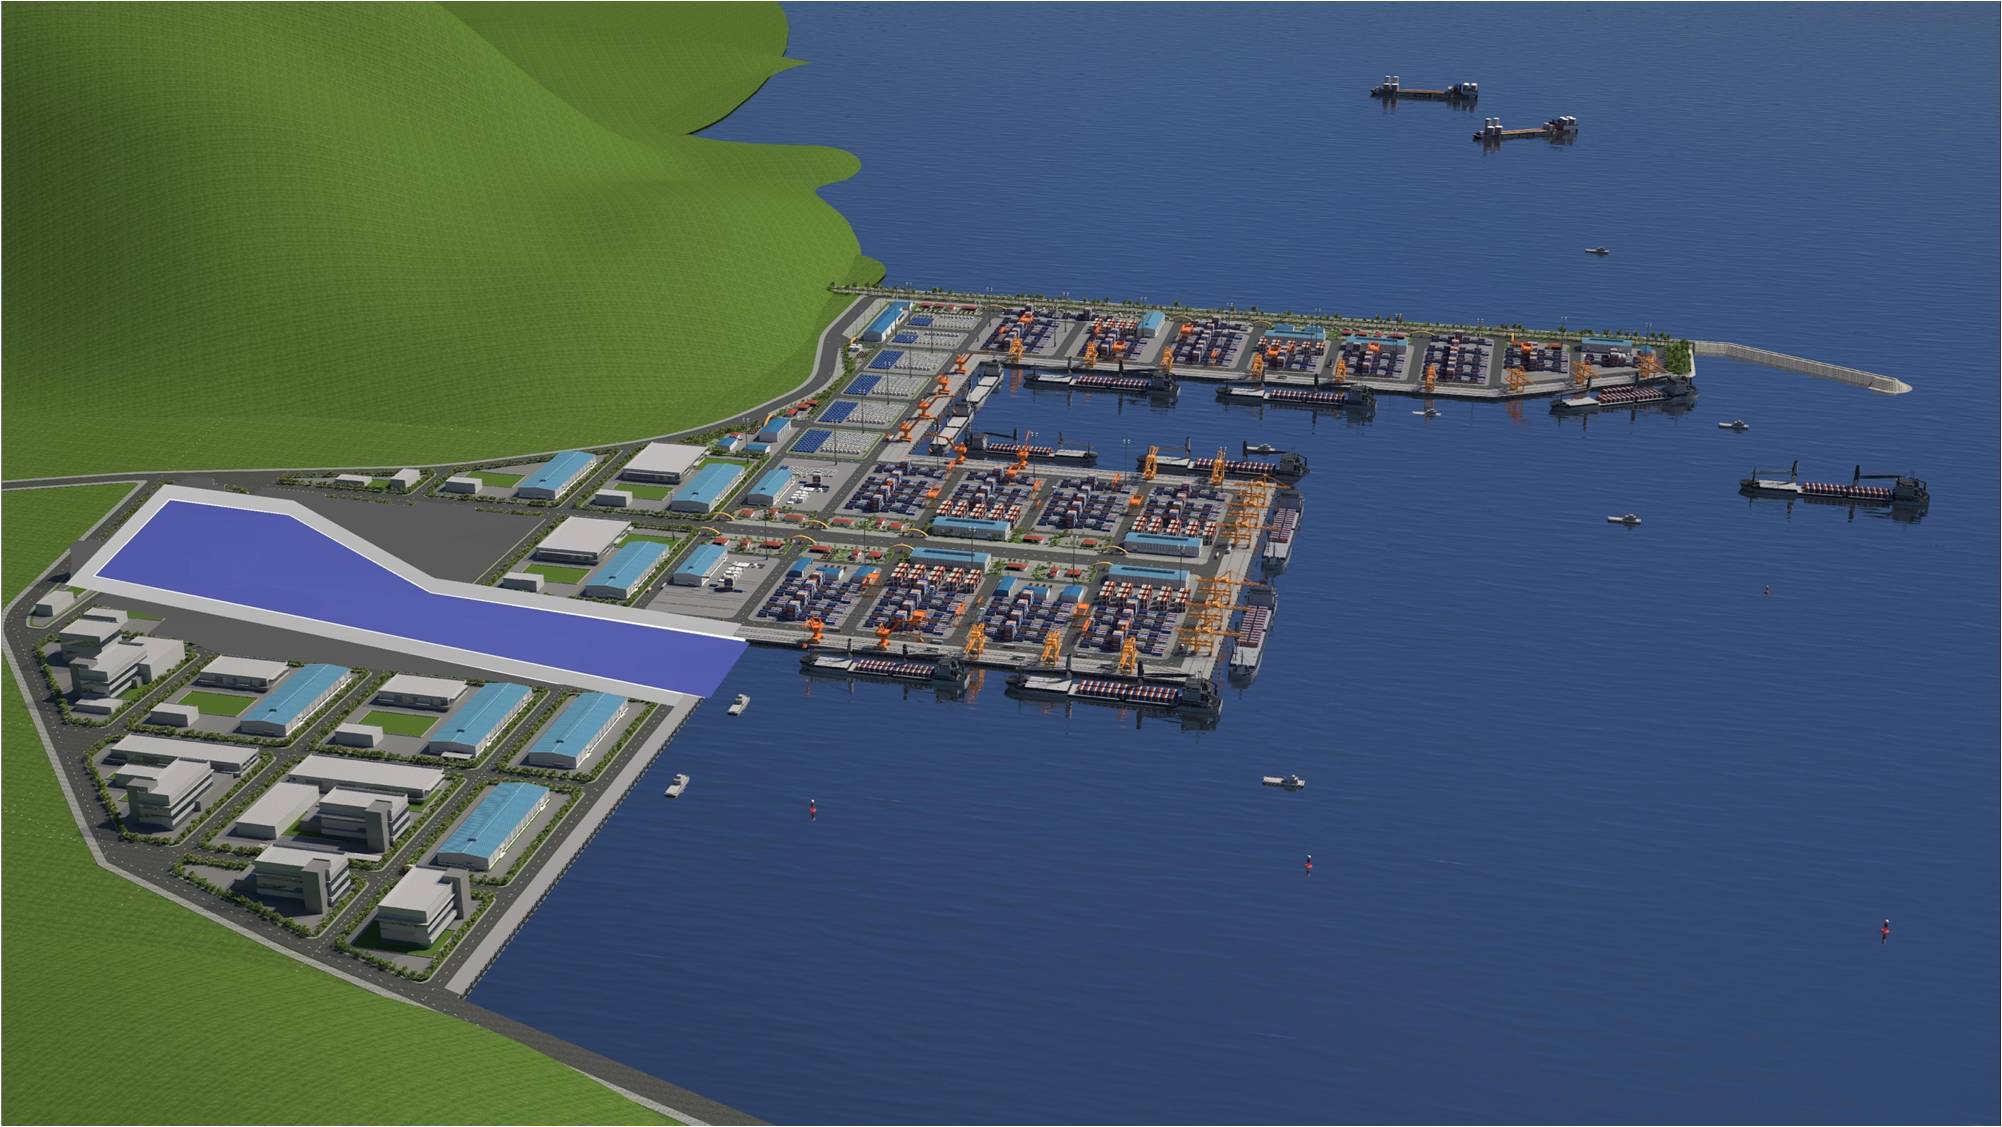 Liên Chiểu là cảng biển thứ hai tại Việt Nam (cùng cảng Lạch Huyện, Hải Phòng đang xây dựng) được quy hoạch với chức năng là cảng cửa ngõ quốc tế.